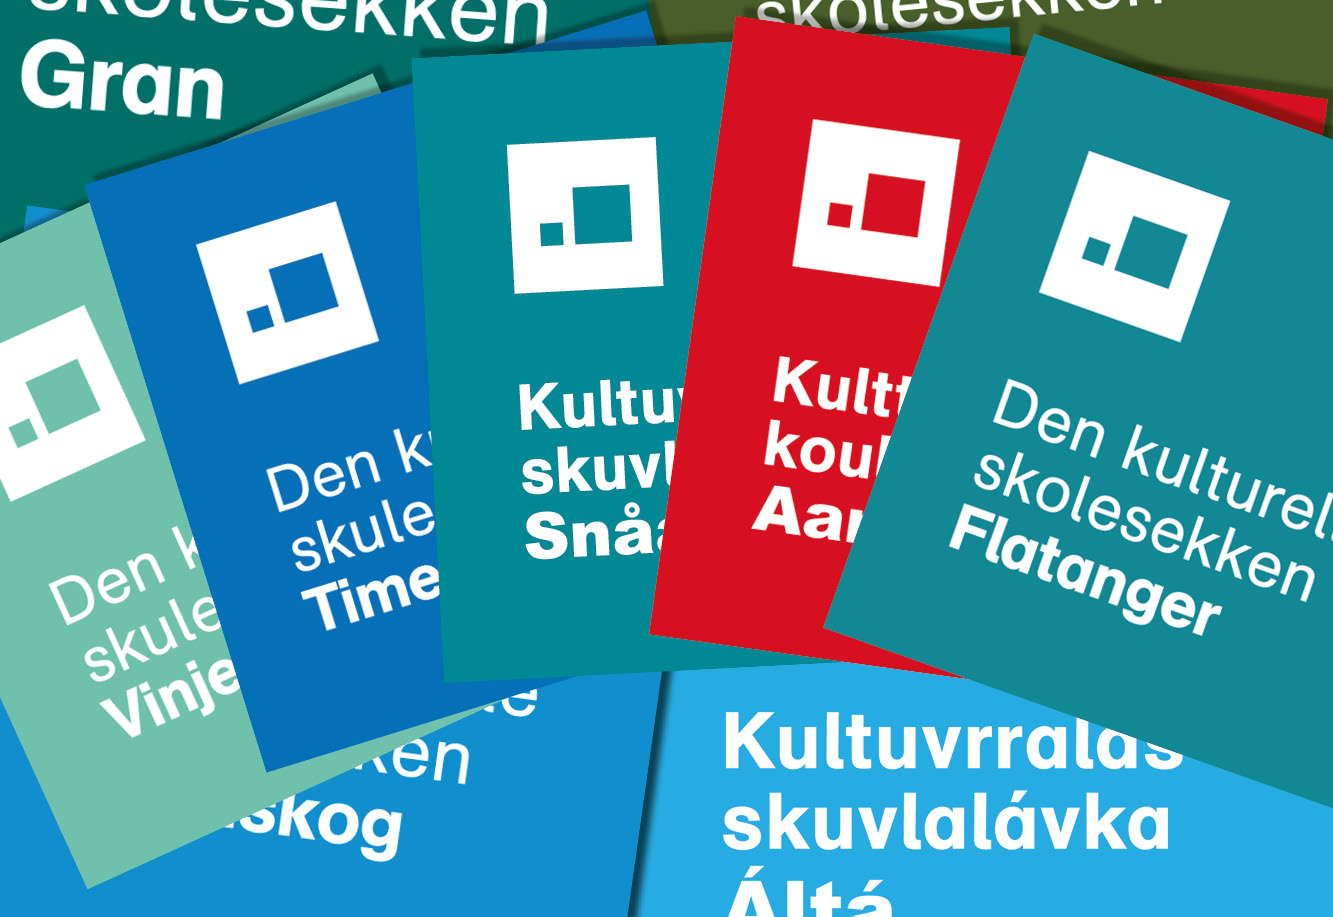 Kollasj med DKS-logoer for ulike fylker og kommuner